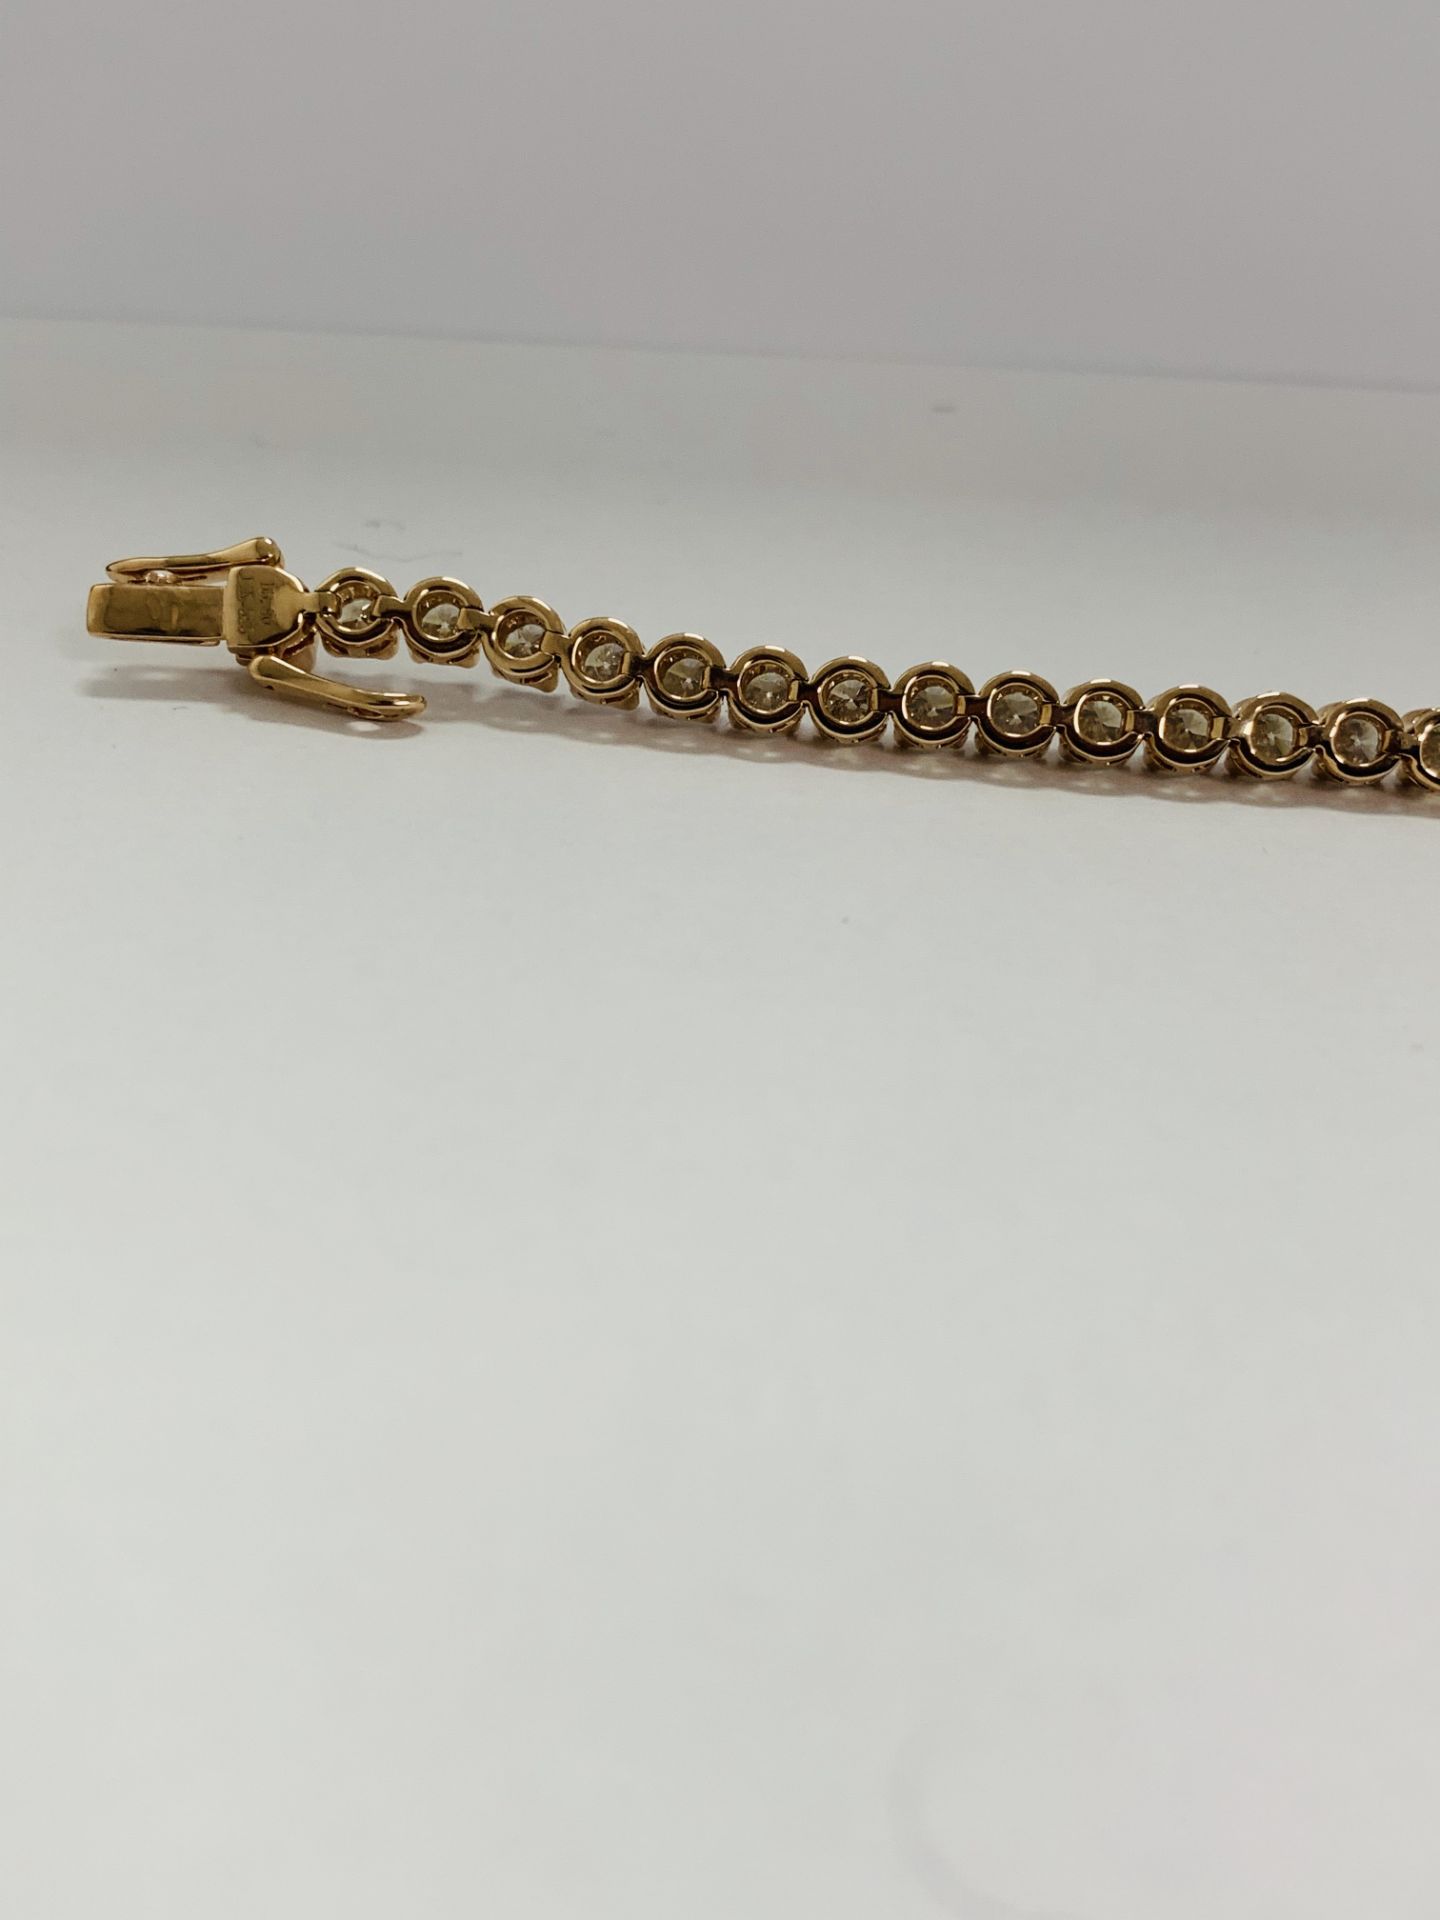 14K Rose Gold Bracelet - Image 10 of 20